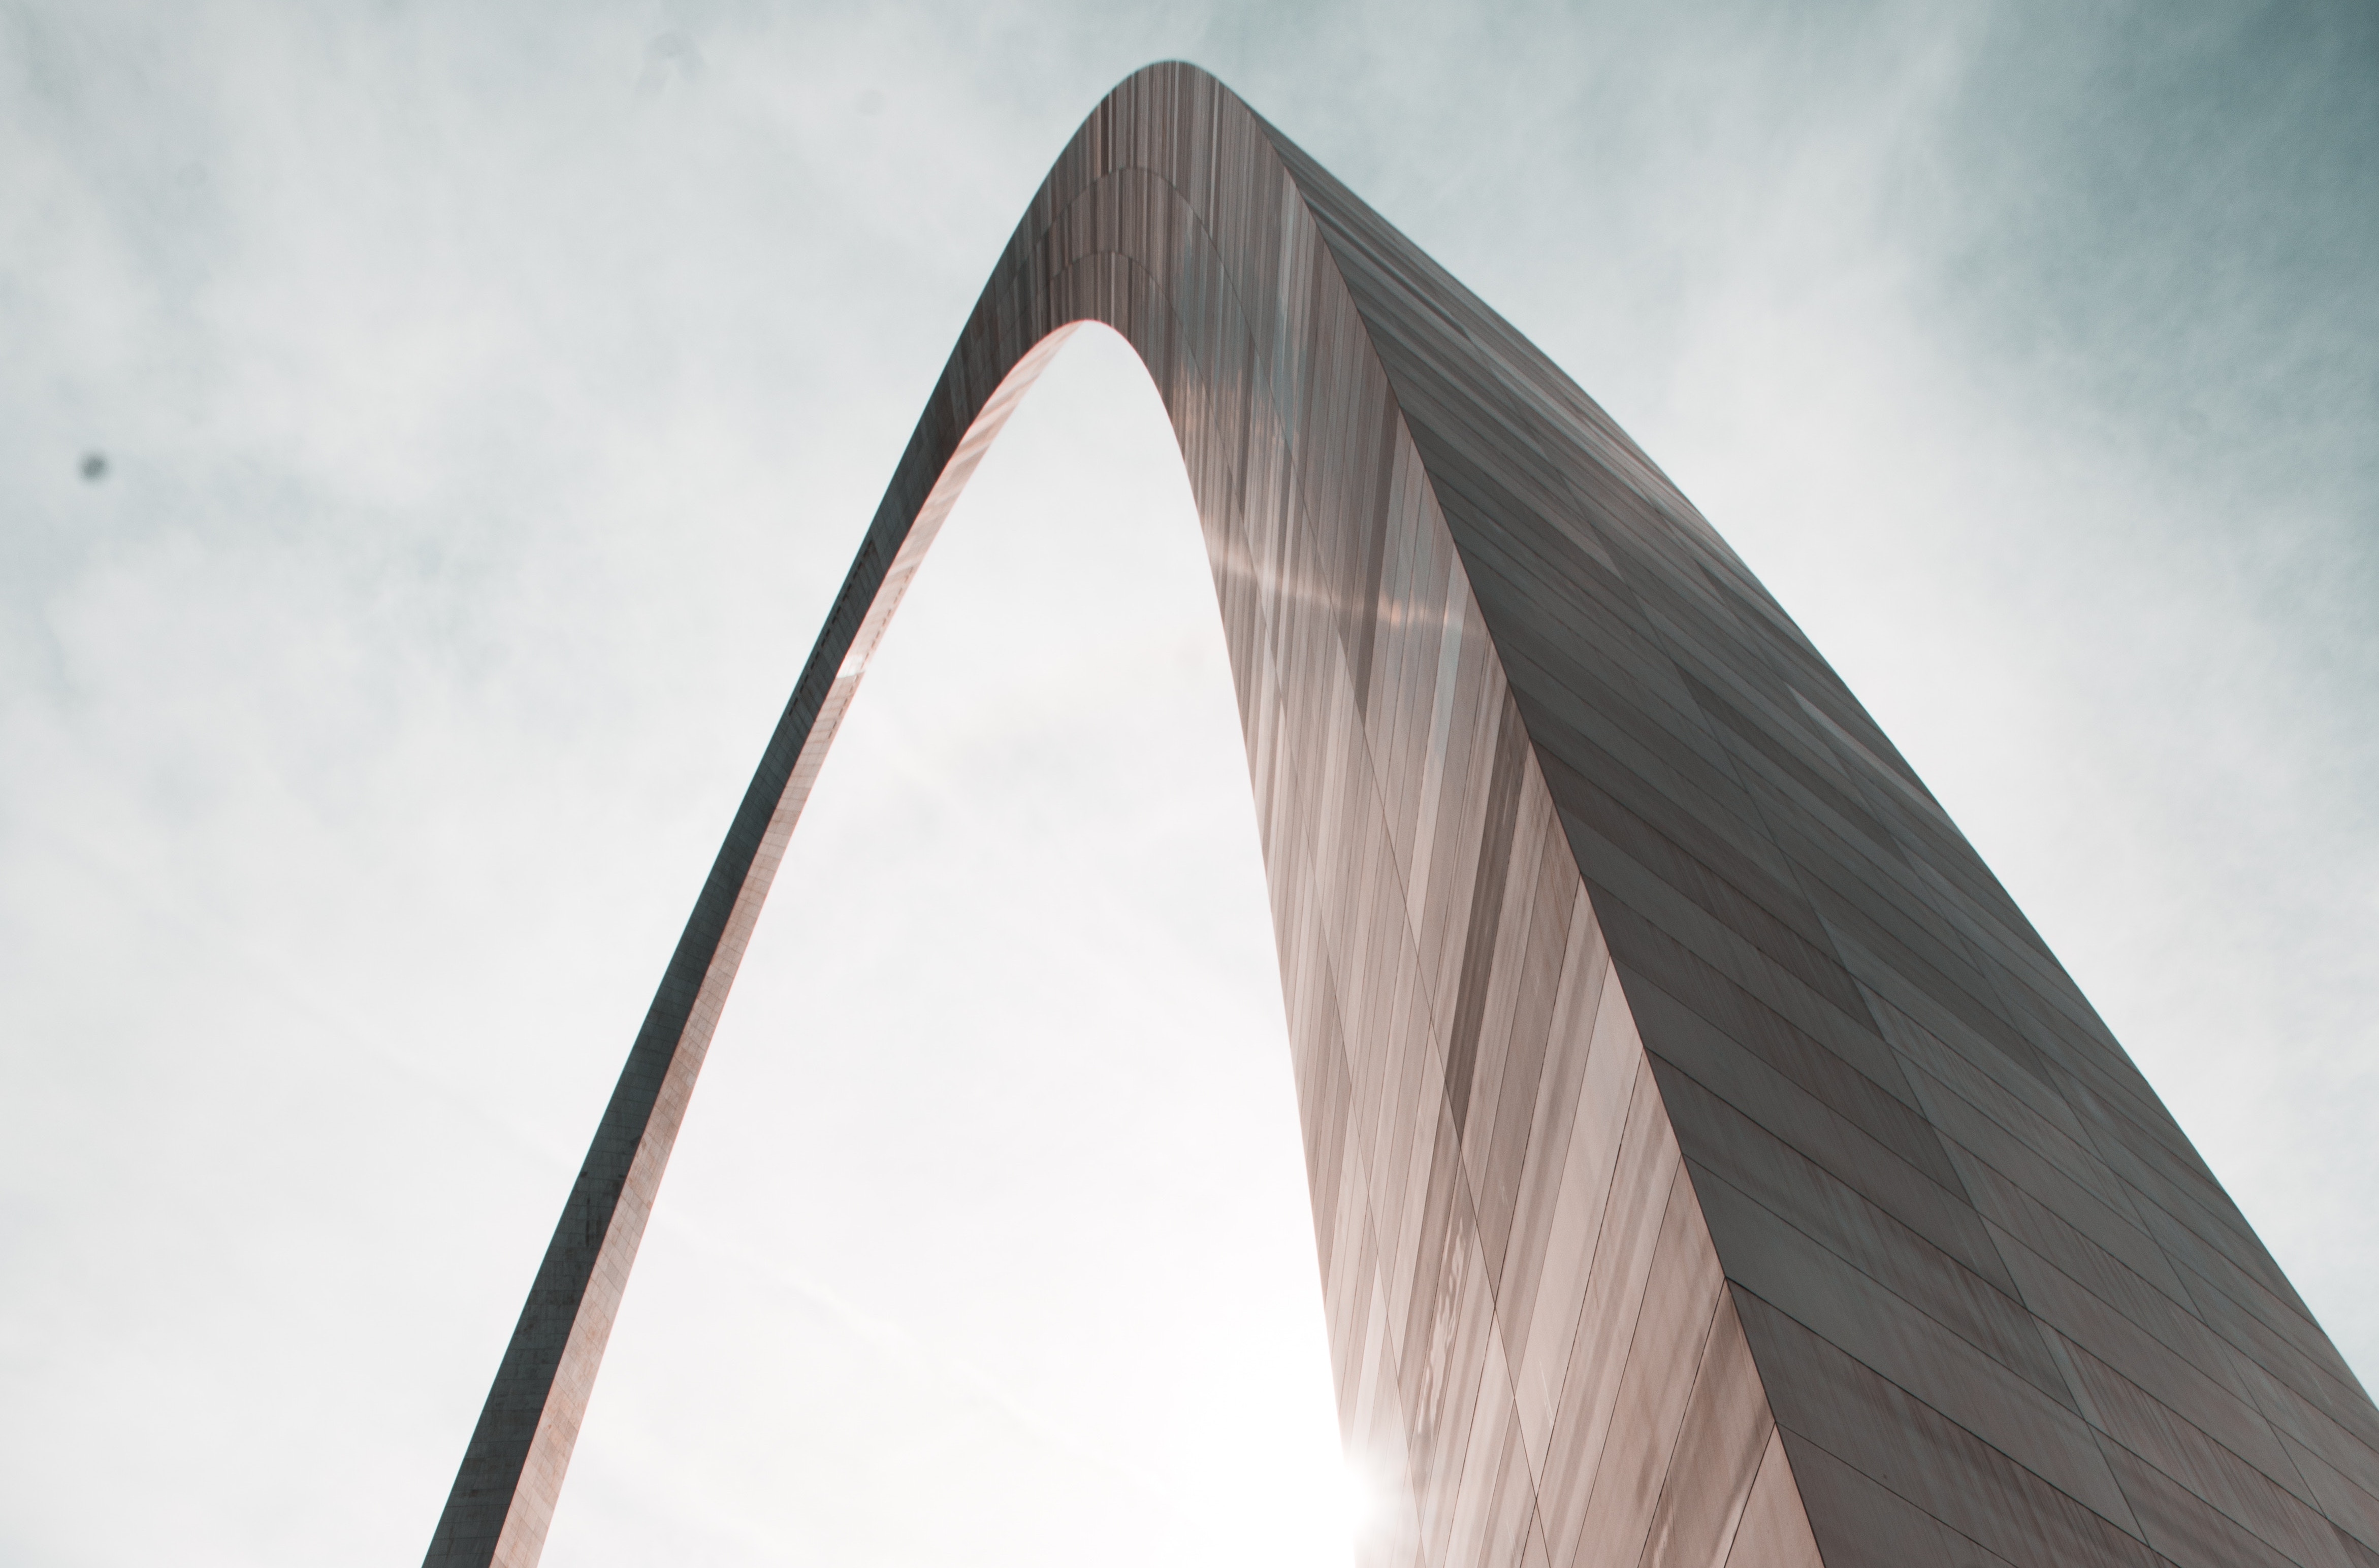 St. Louis arch